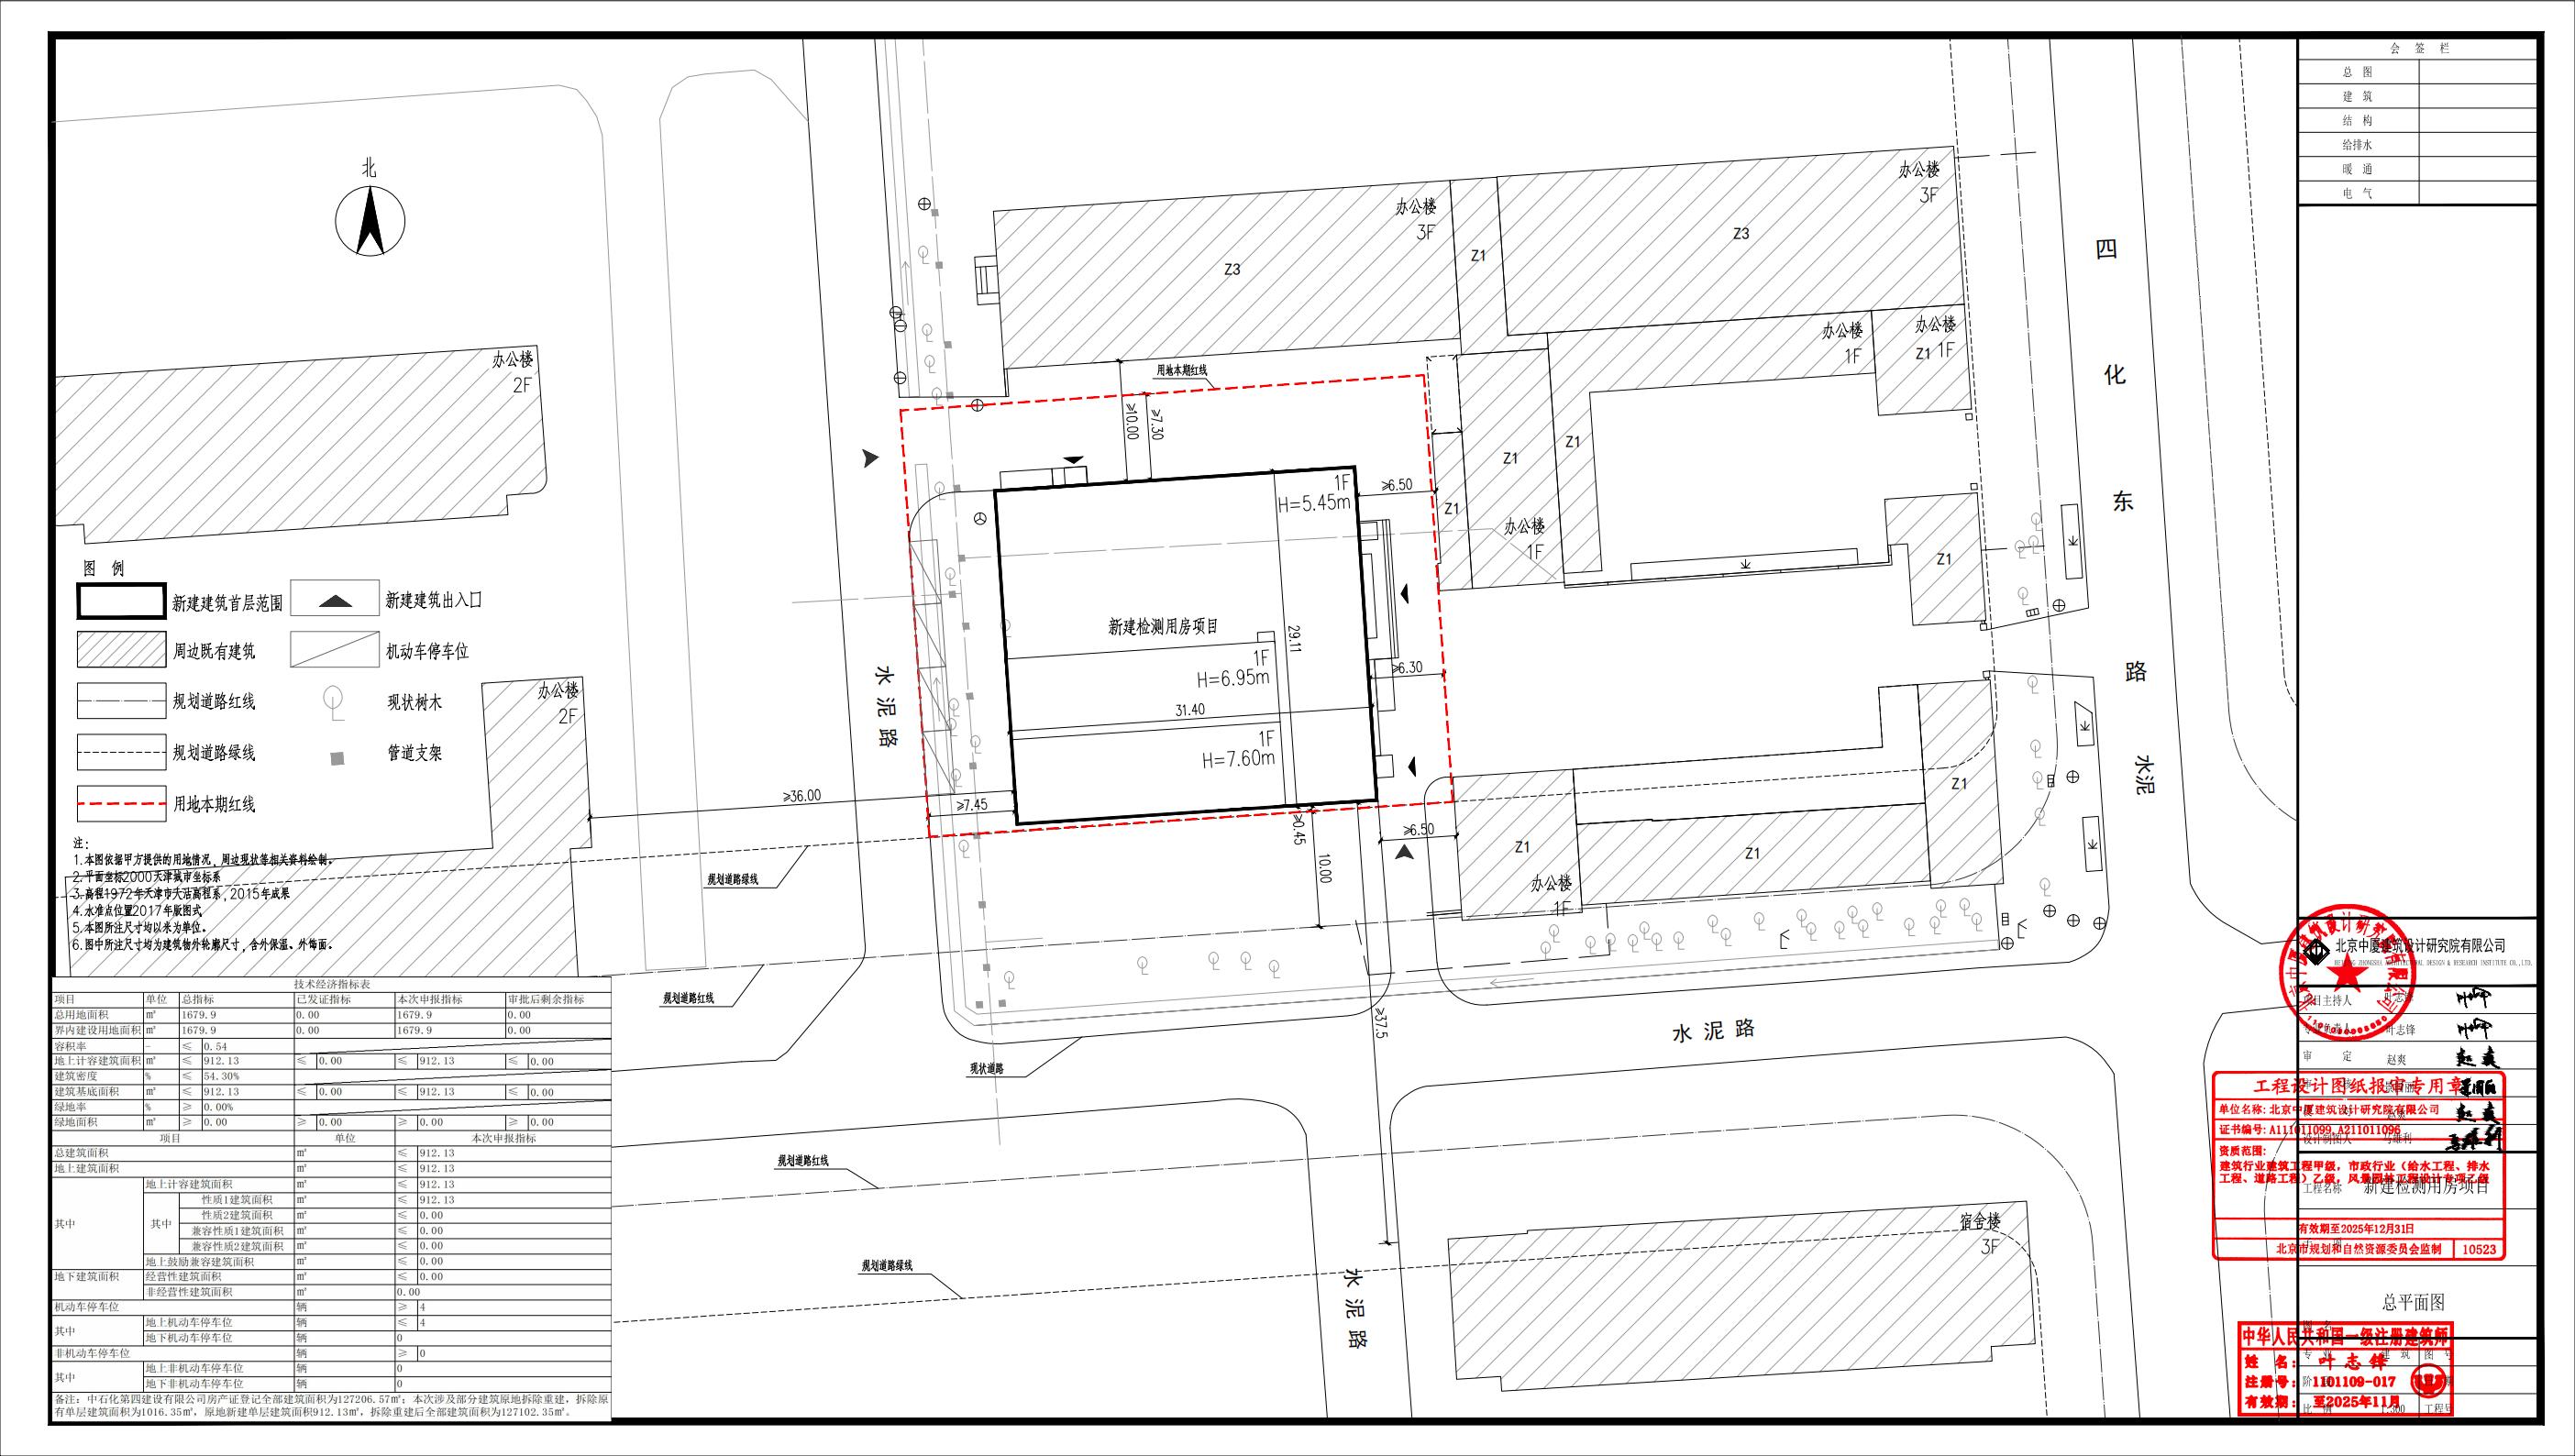 (滨海新区)关于新建检测用房项目建筑设计方案总平面图的公示